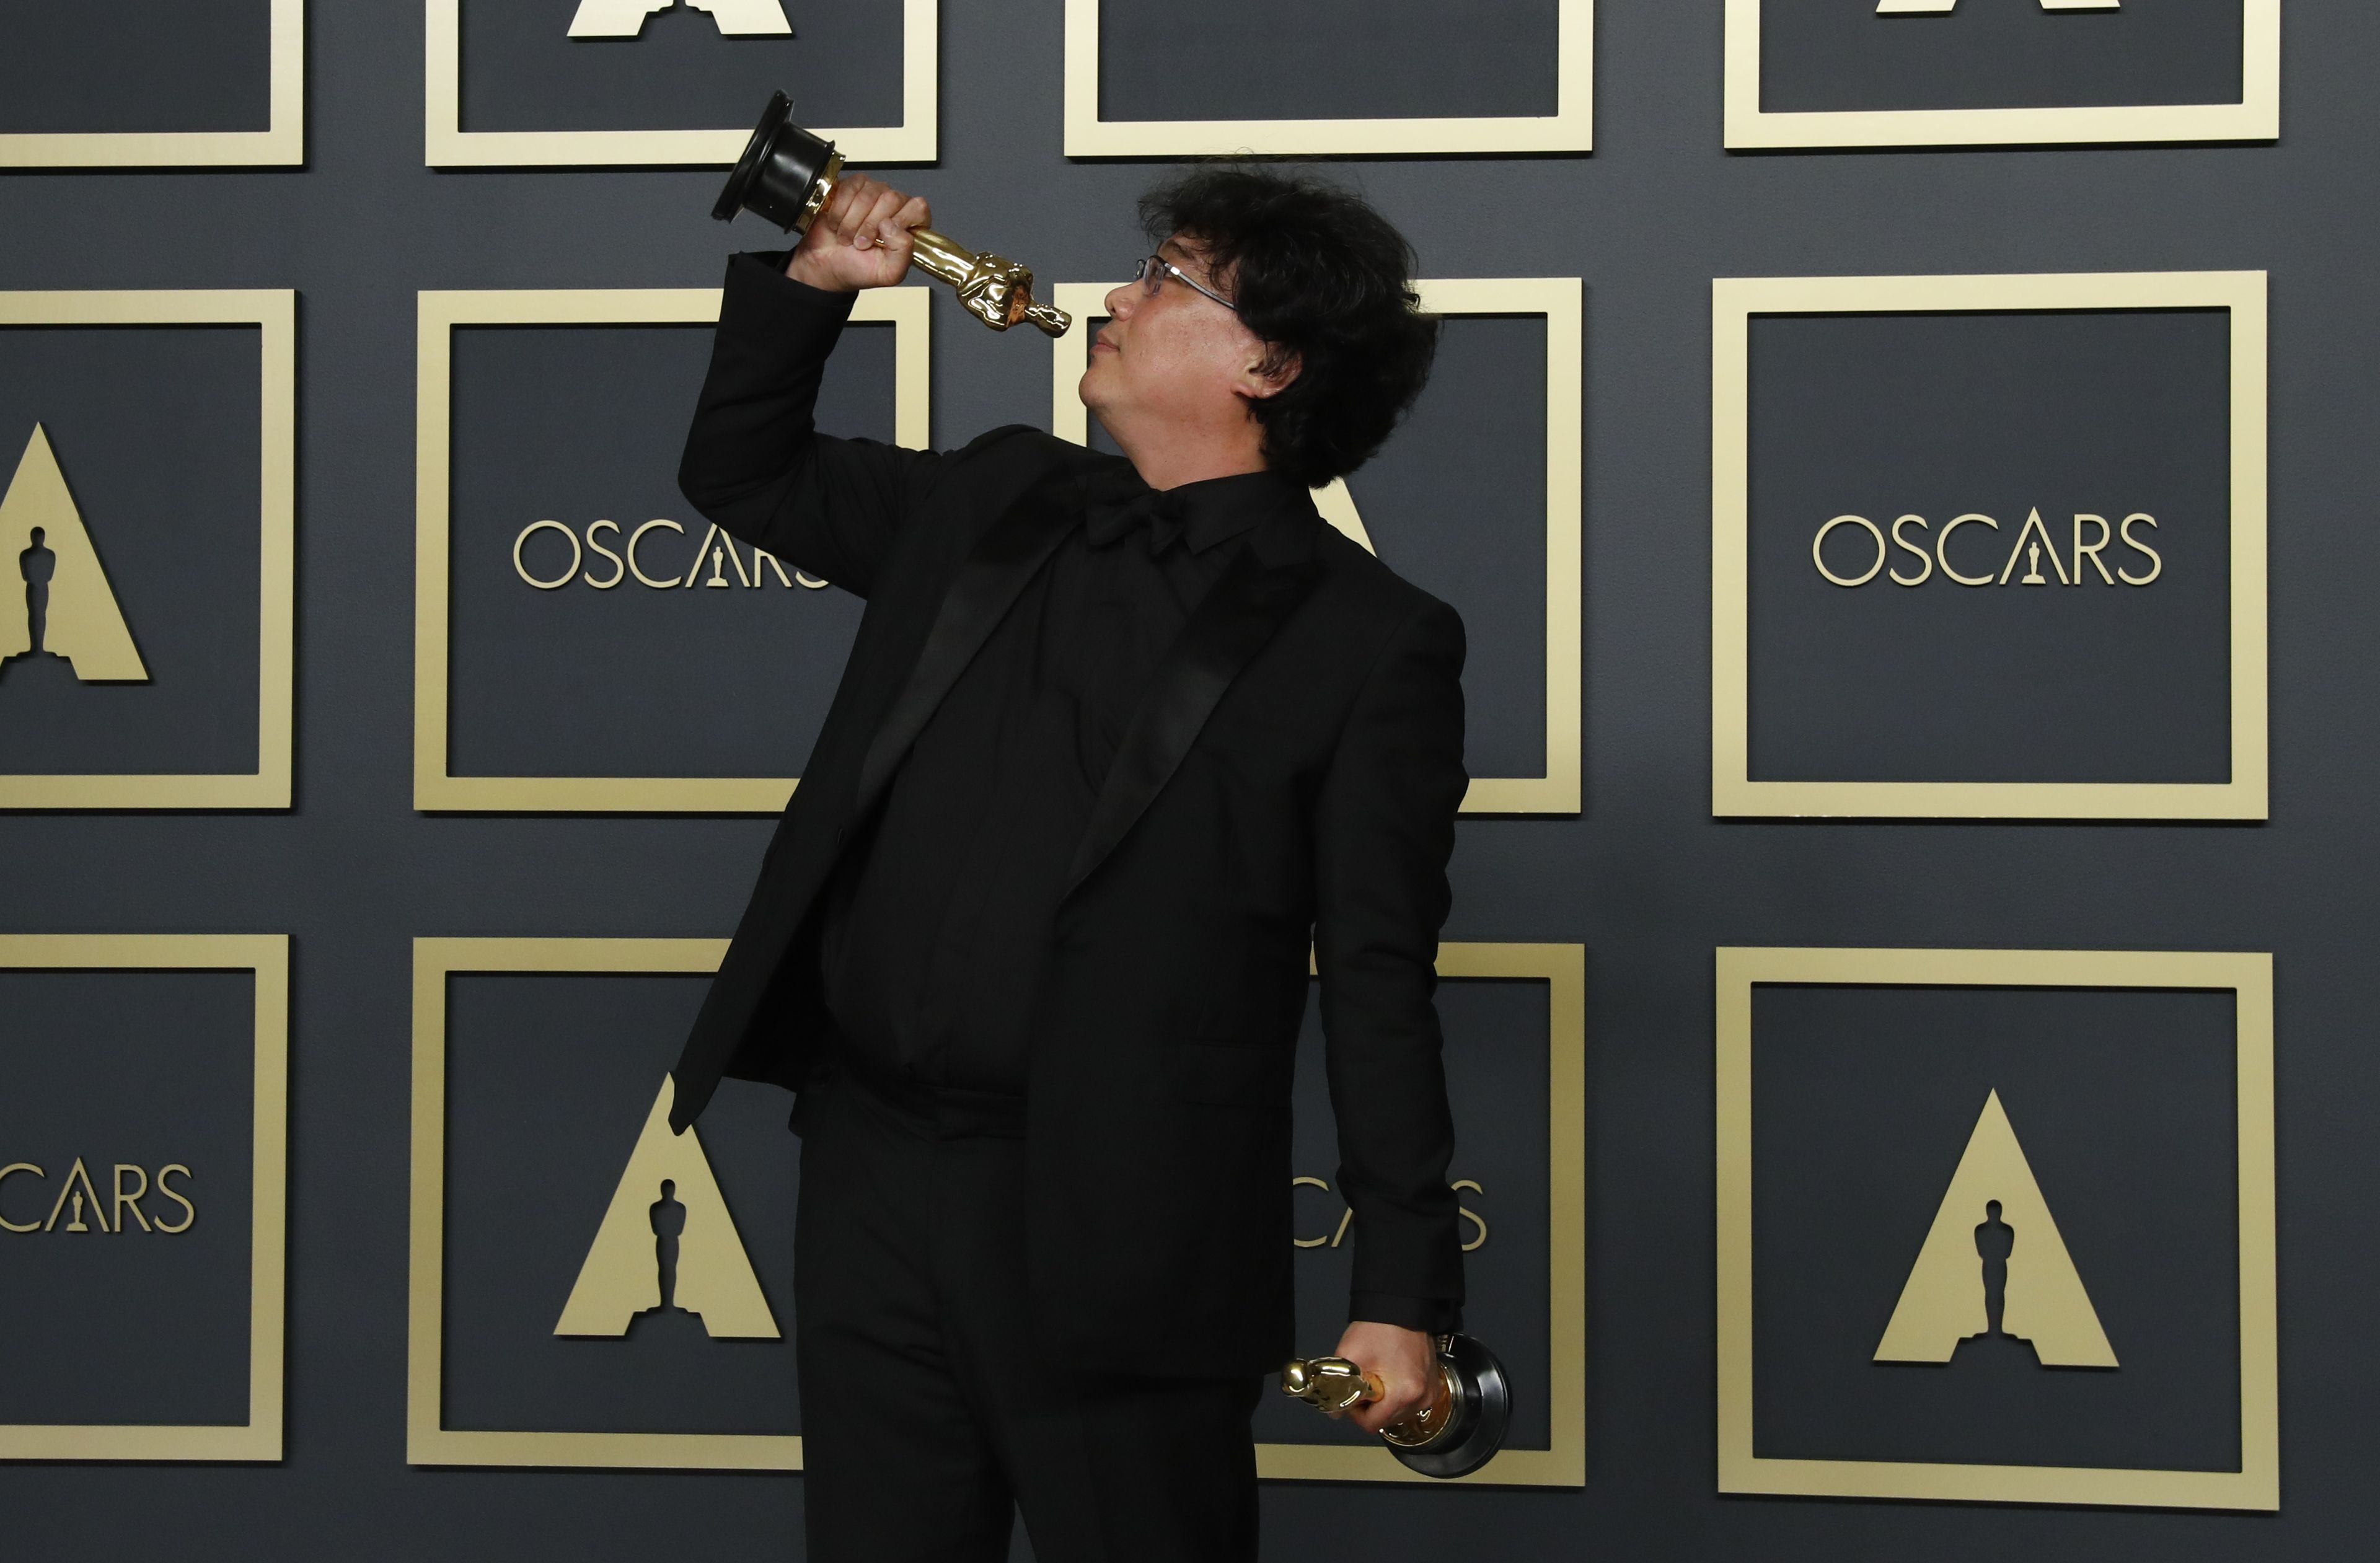 Premios Oscar 2021: horario y cómo ver online la ceremonia